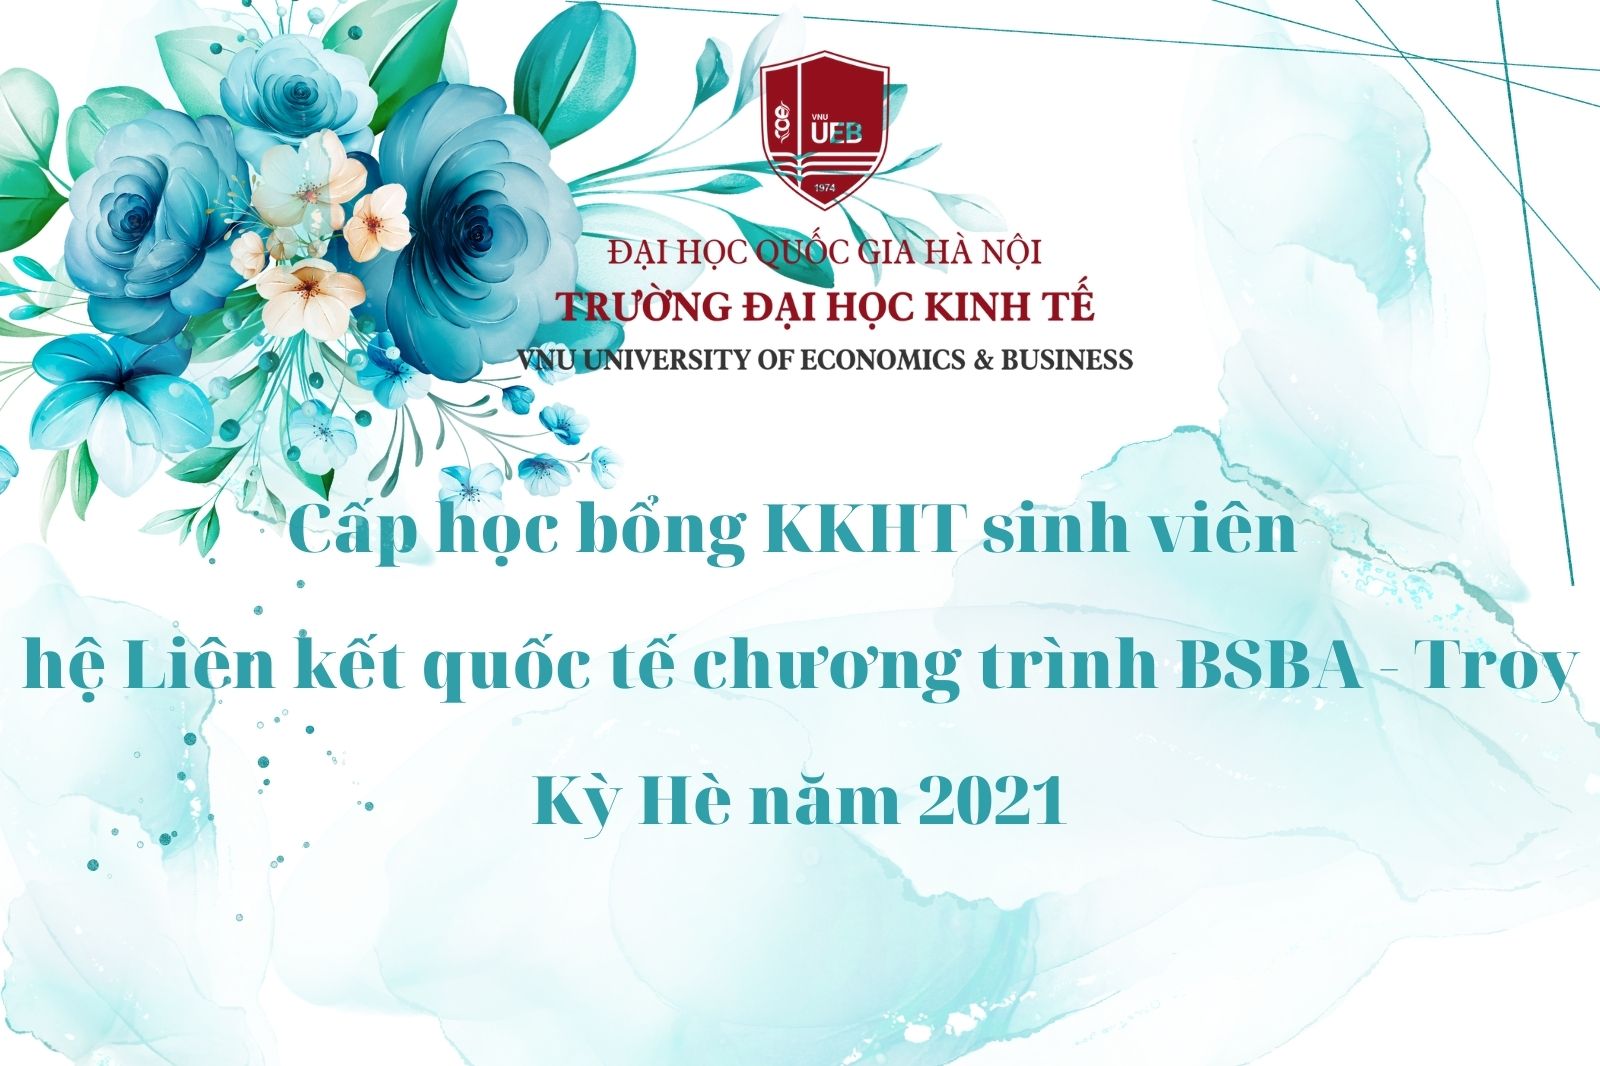 Học bổng KKHT sinh viên hệ Liên kết quốc tế chương trình BSBA – Troy kỳ Hè năm 2021